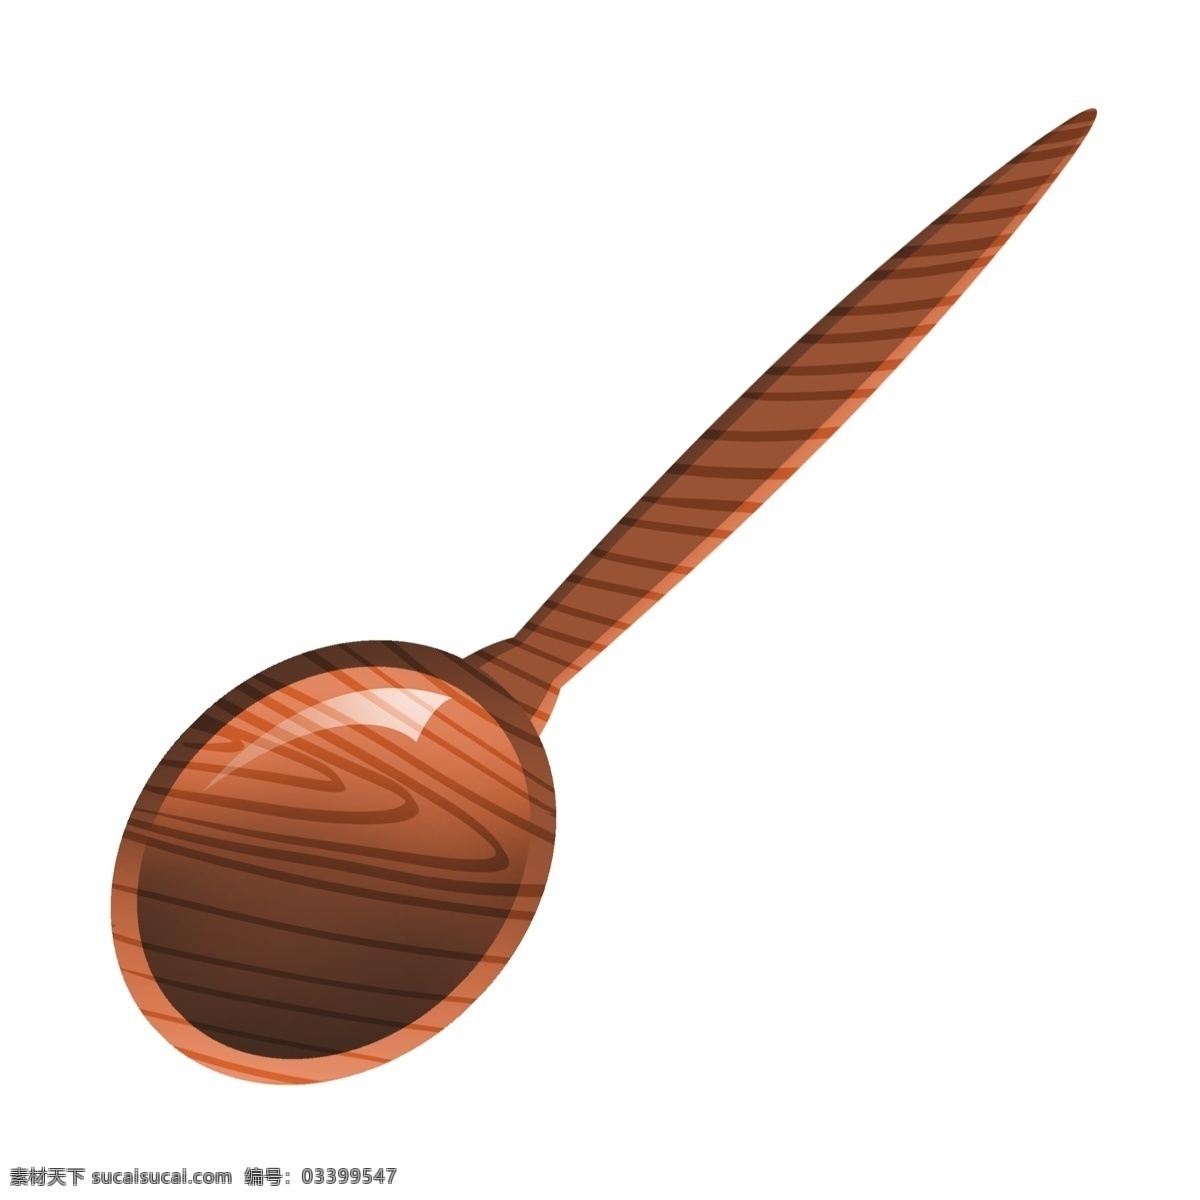 木质 勺子 卡通 插画 木质的勺子 卡通插画 木质插画 木头 木块 木板 木材 木料 勺子的插画